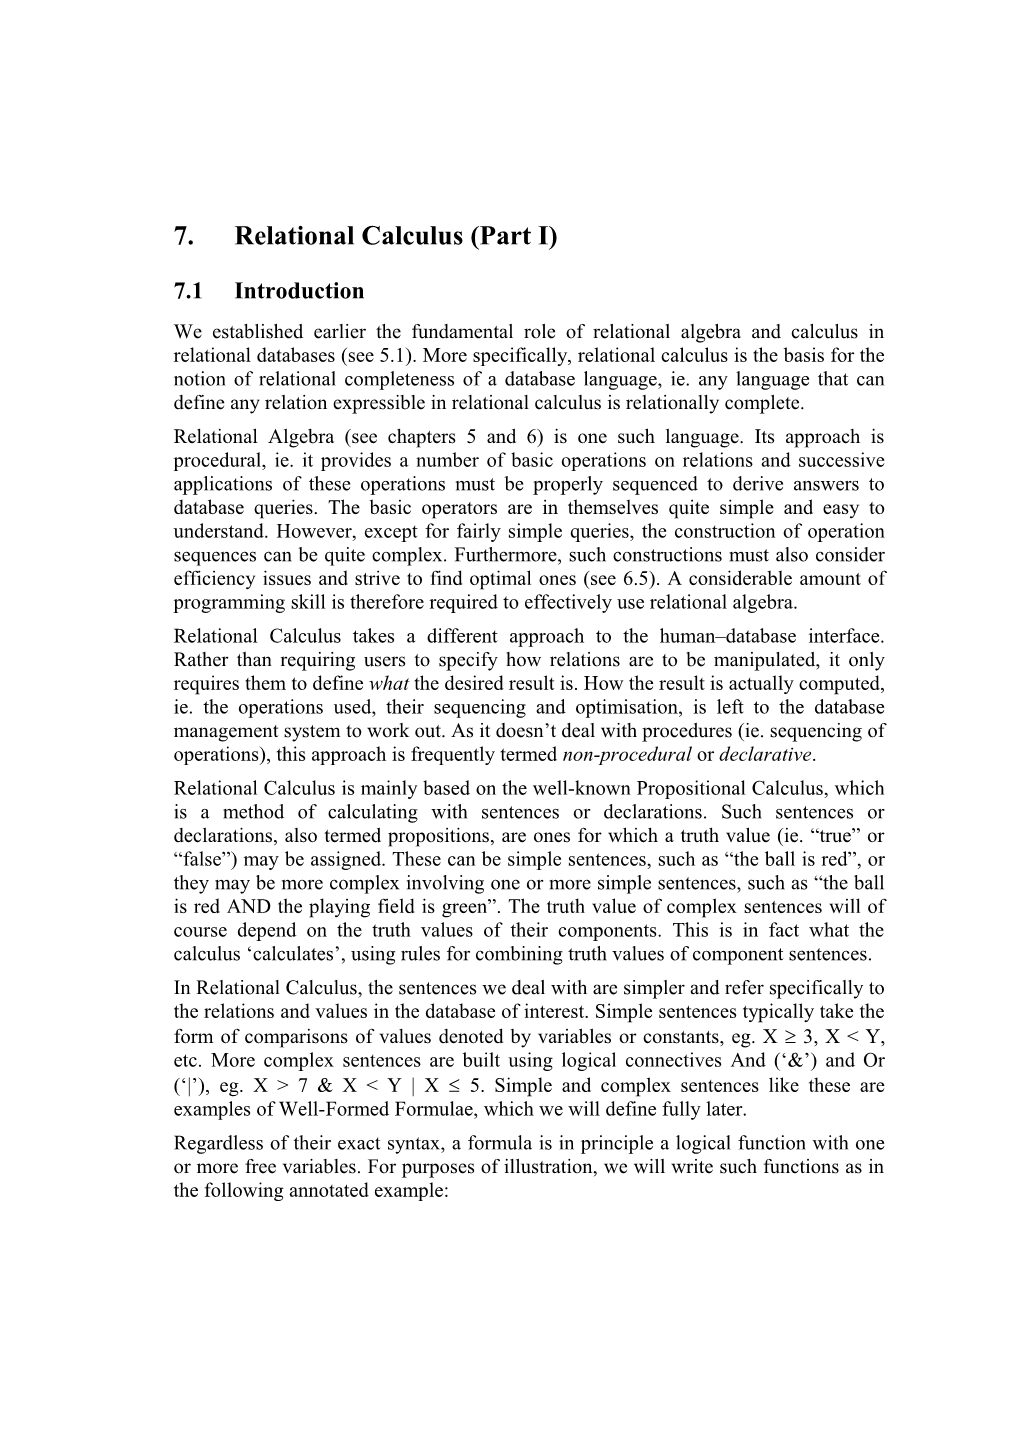 7. Relational Calculus (Part I)